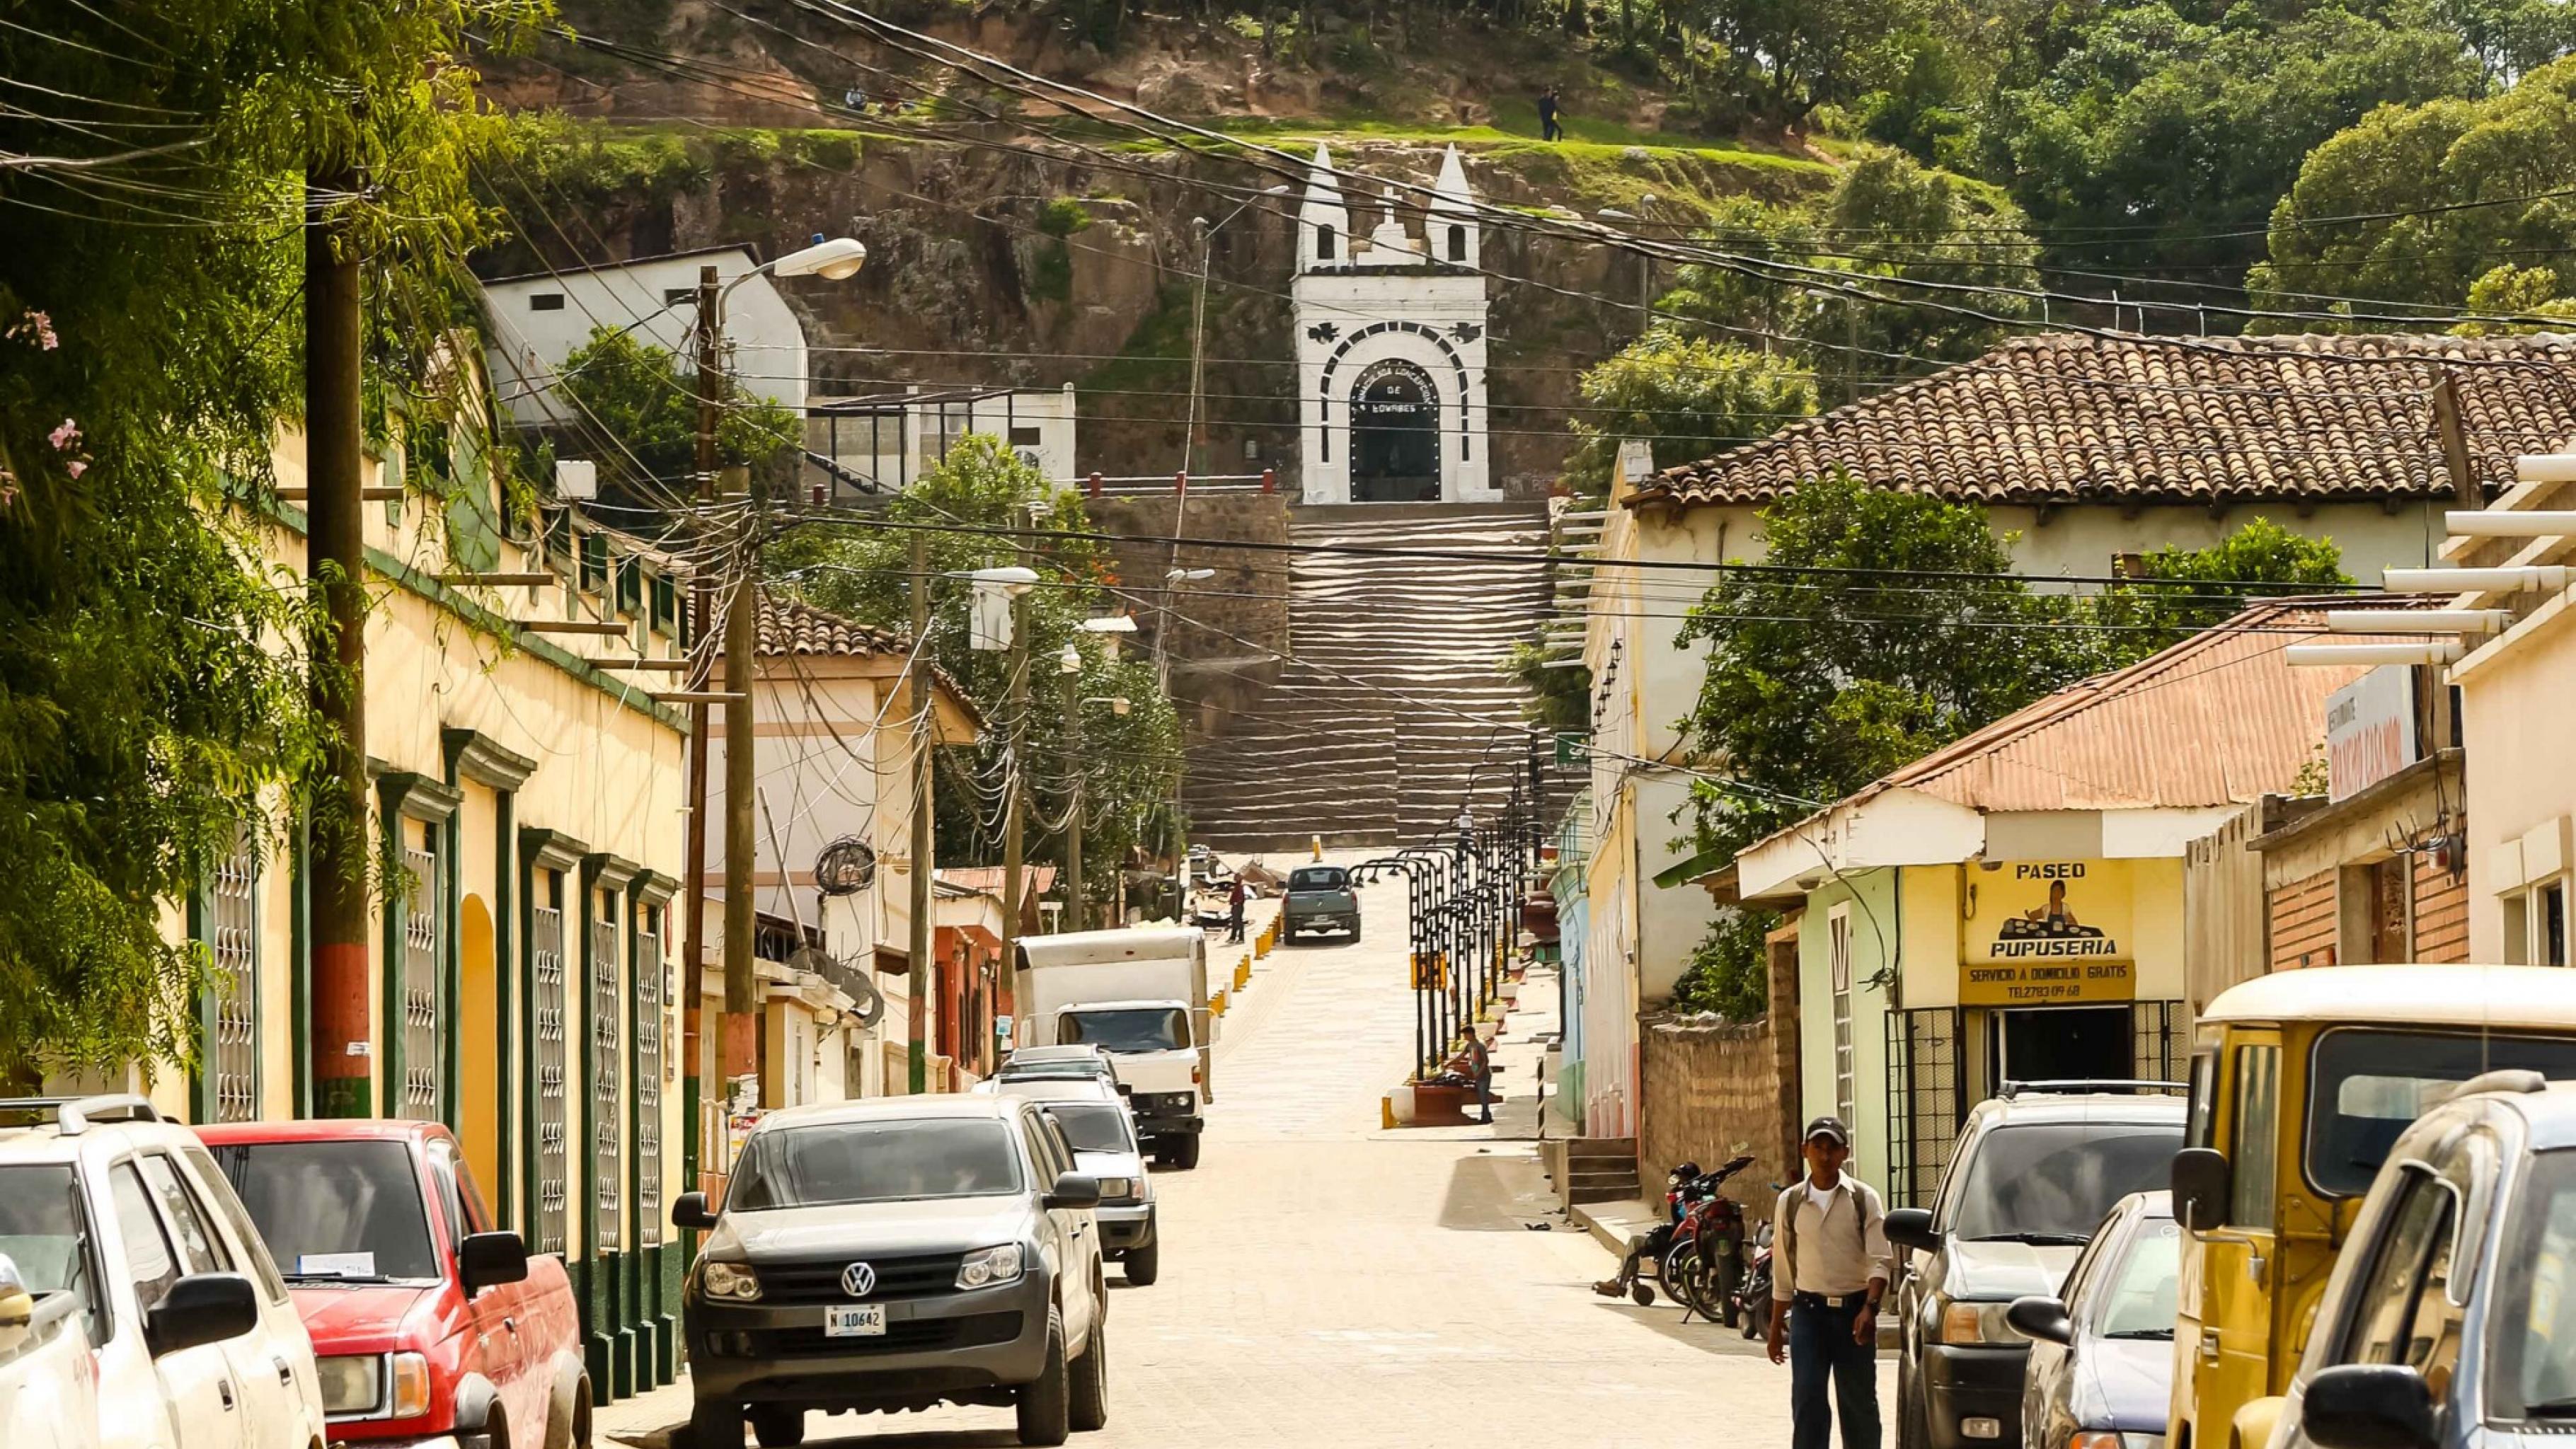 Eine sonnige kleine Straße, gesäumt von Autos und niedrigen Häusern, führt bergauf. Am Ende der Straße führt eine Treppe zu einer Kapelle an einem bewaldeten Berg.